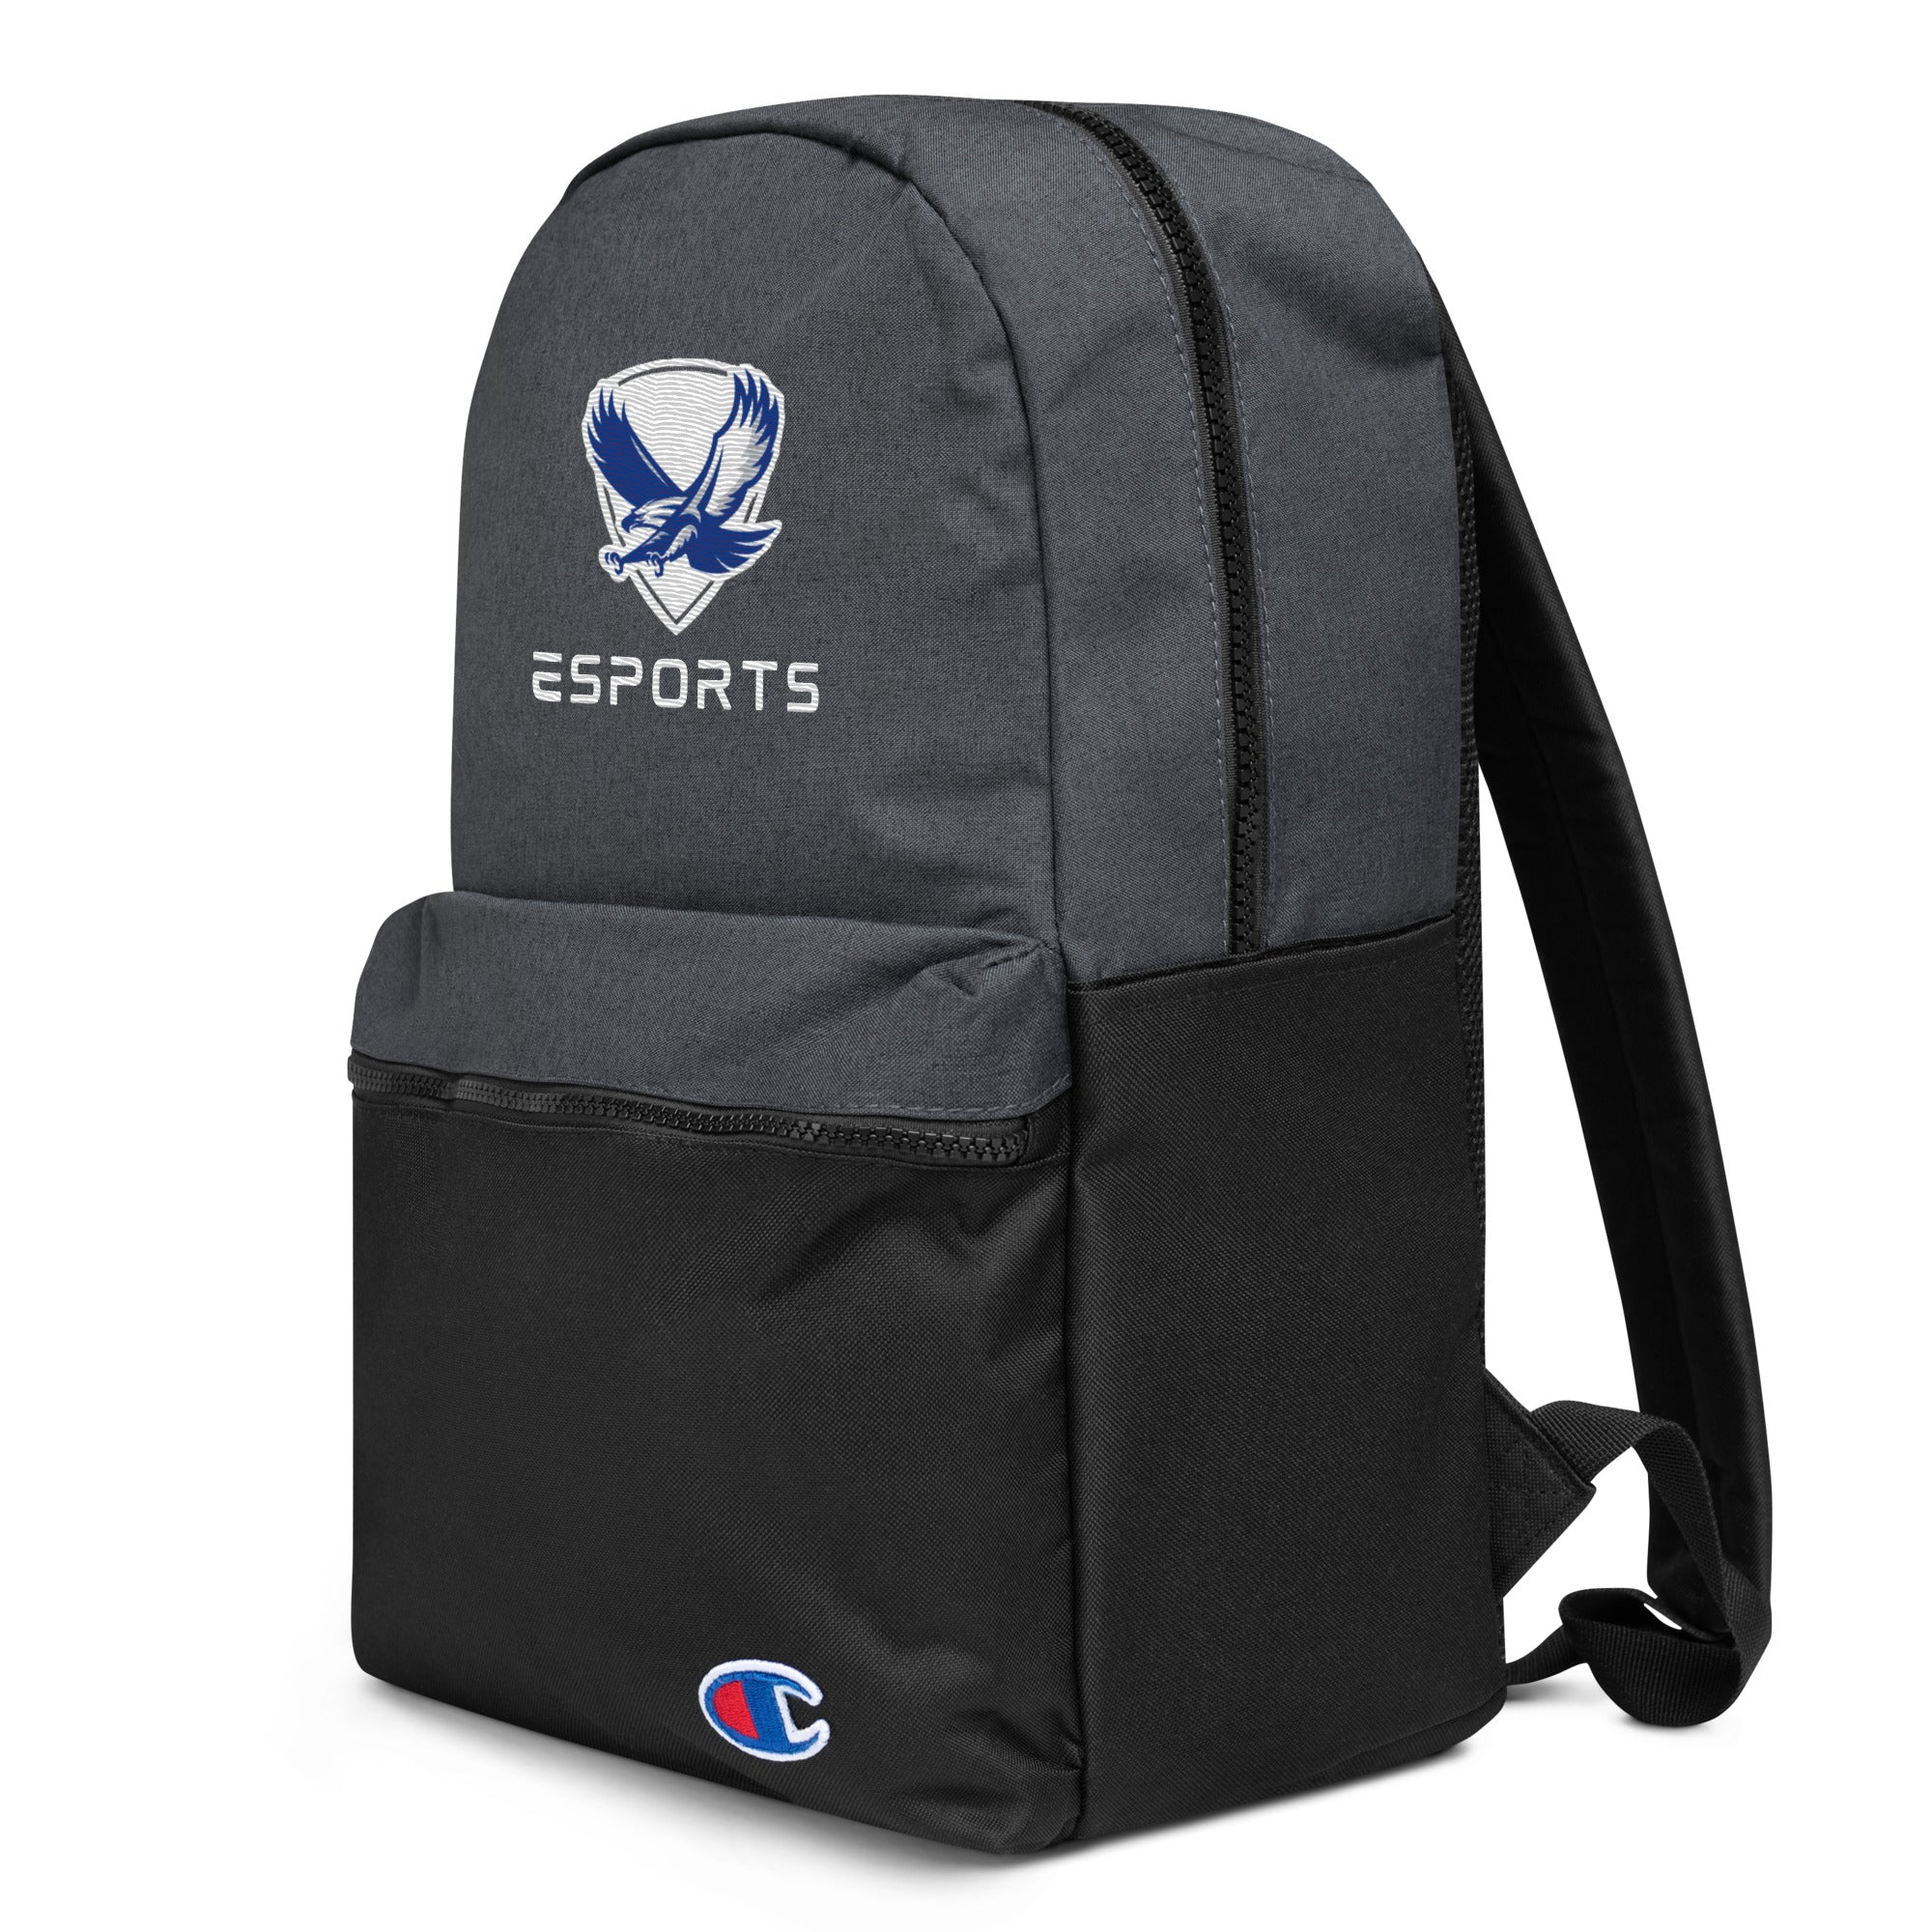 NAHS Esports Backpack